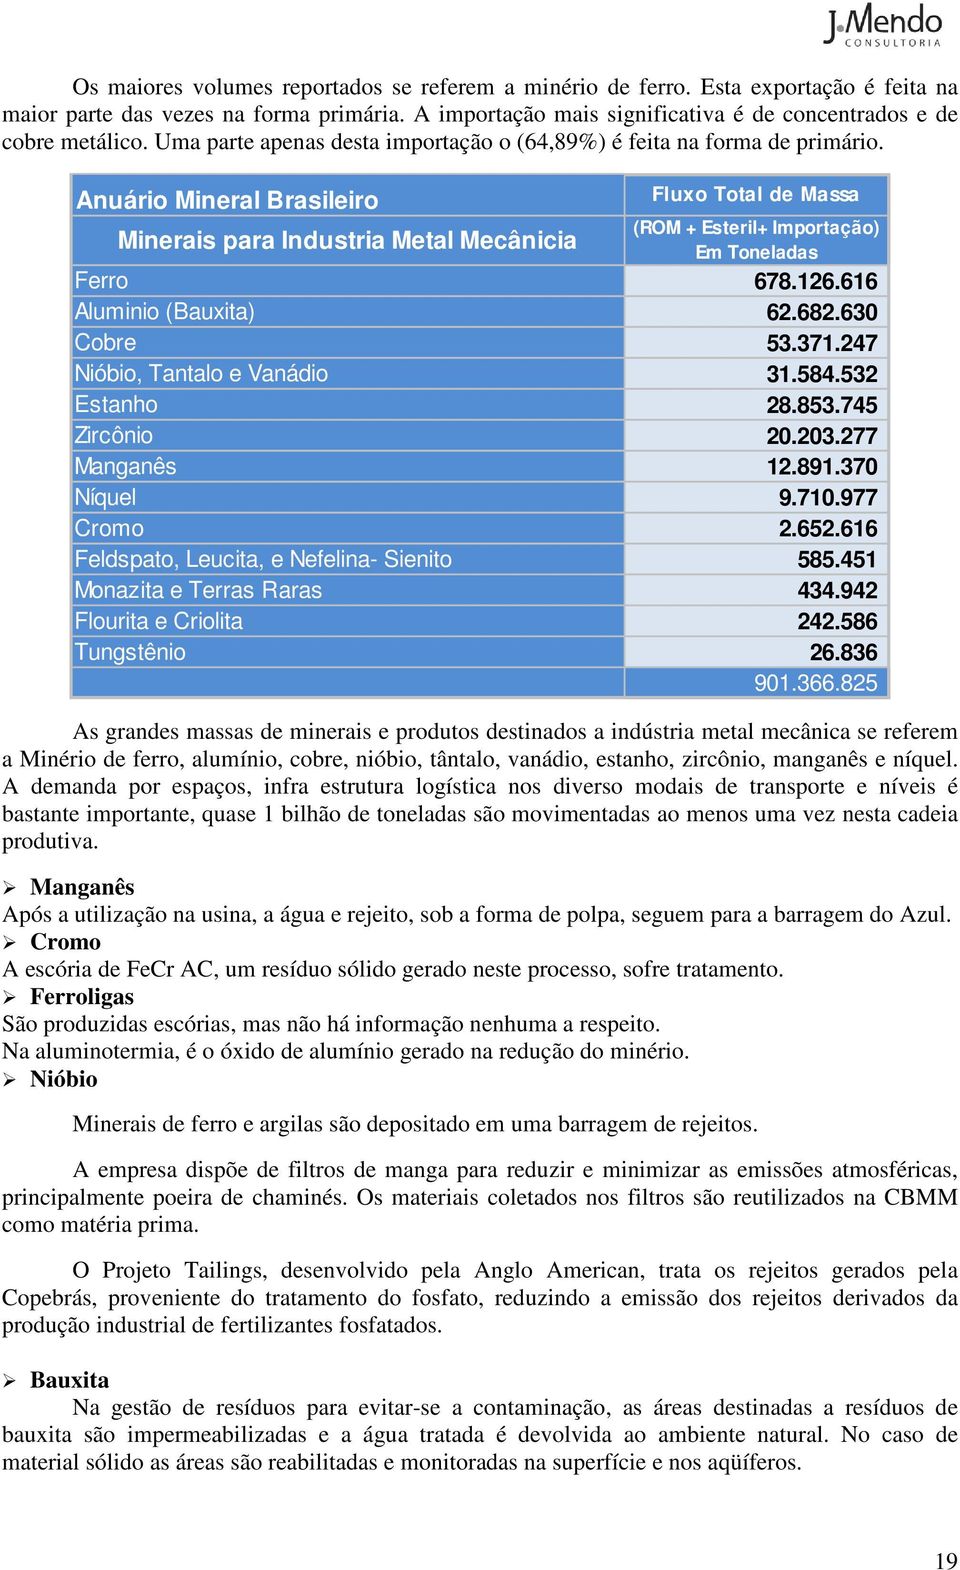 Anuário Mineral Brasileiro Minerais para Industria Metal Mecânicia Fluxo Total de Massa (ROM + Esteril+ Importação) Em Toneladas Ferro 678.126.616 Aluminio (Bauxita) 62.682.630 Cobre 53.371.